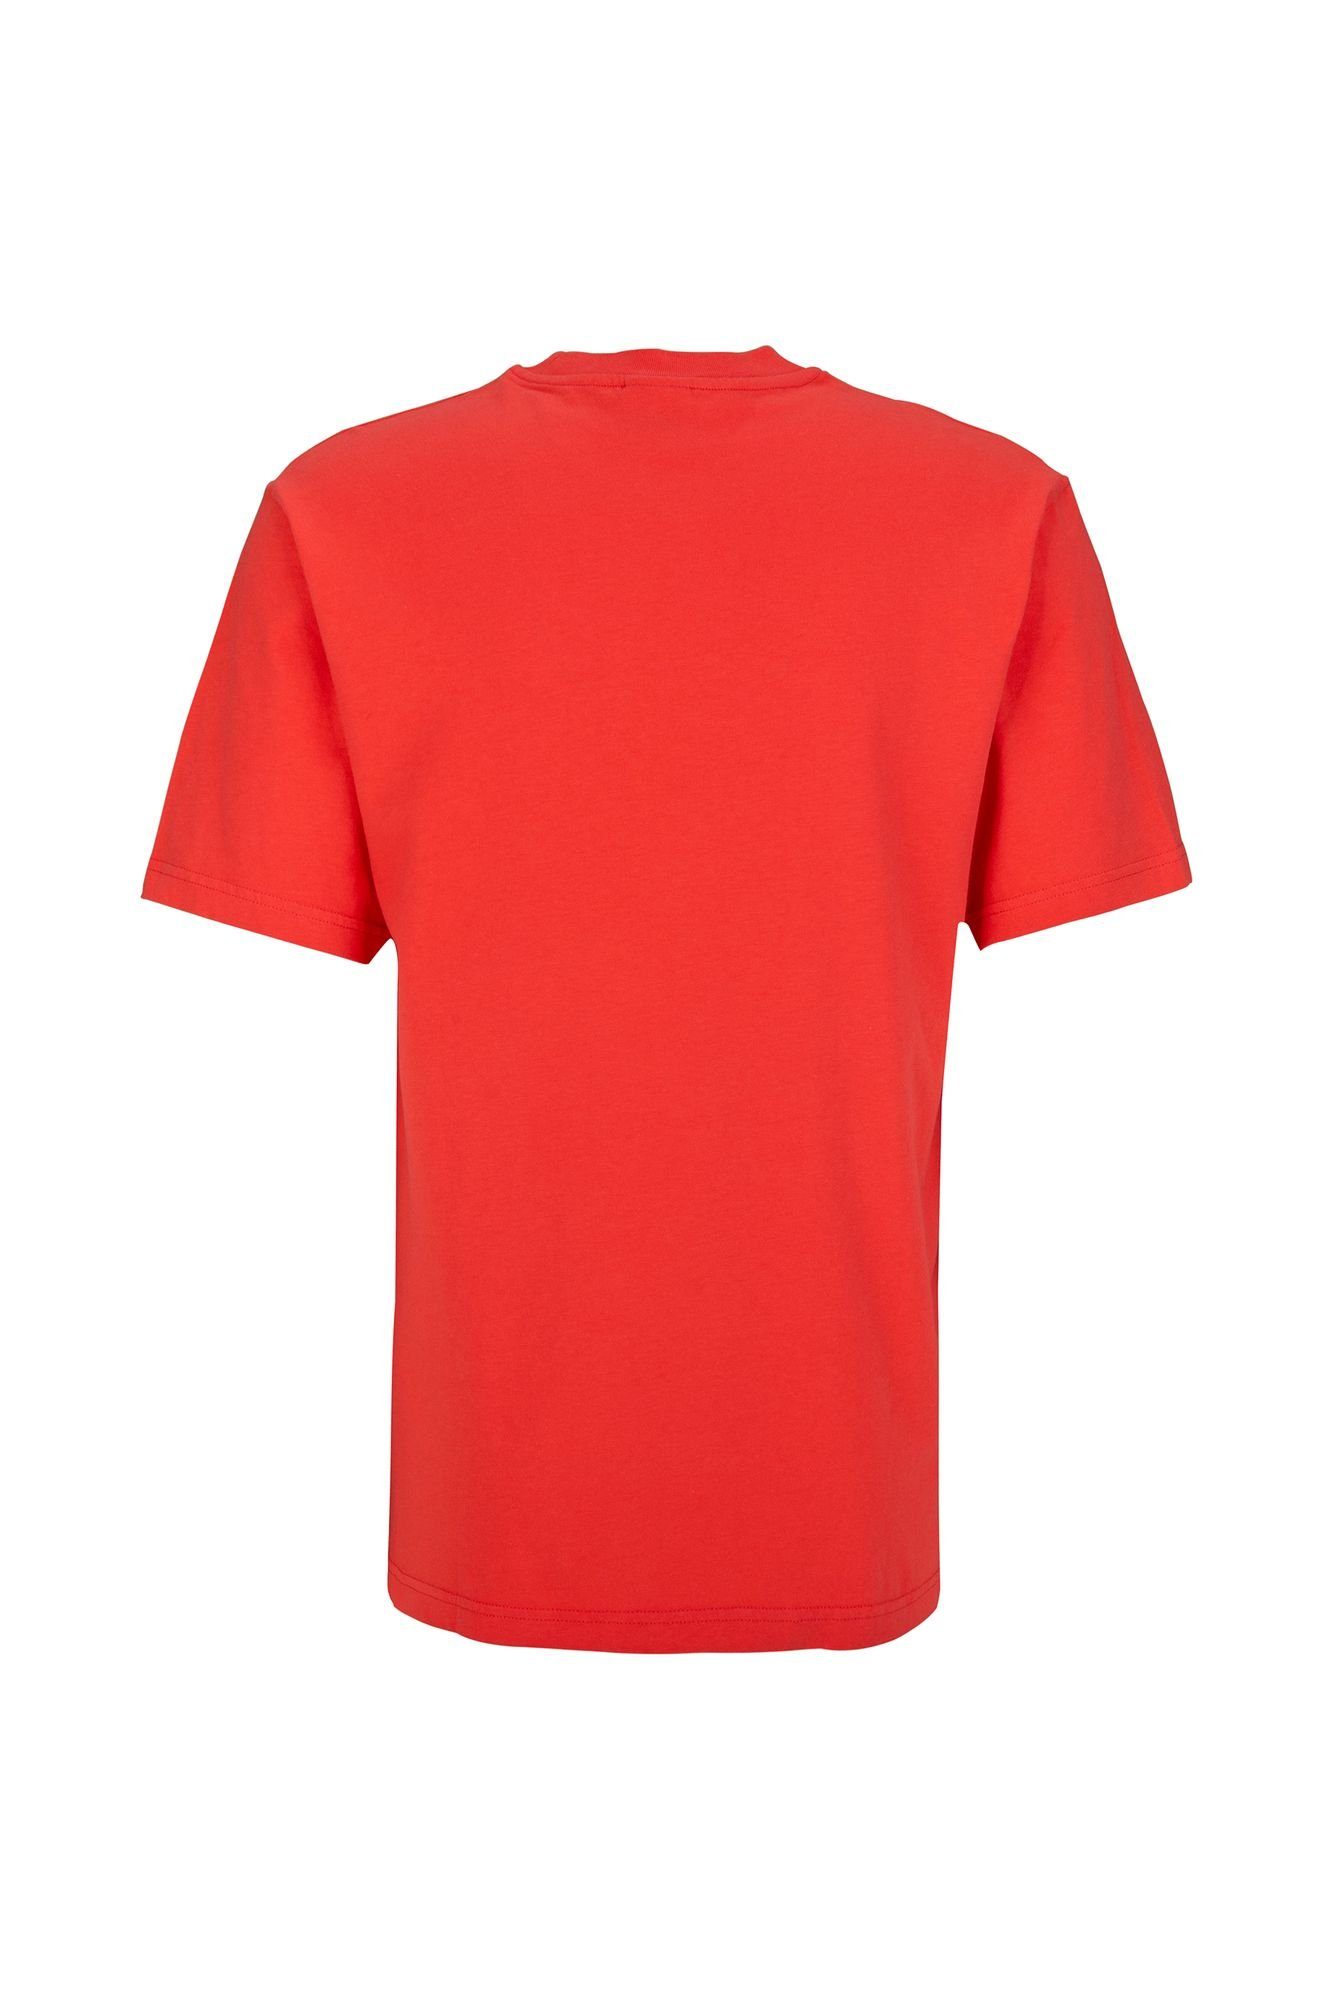 T-Shirt reiner aus & T-Shirt mit Marshall Franklin Baumwolle Logoprint